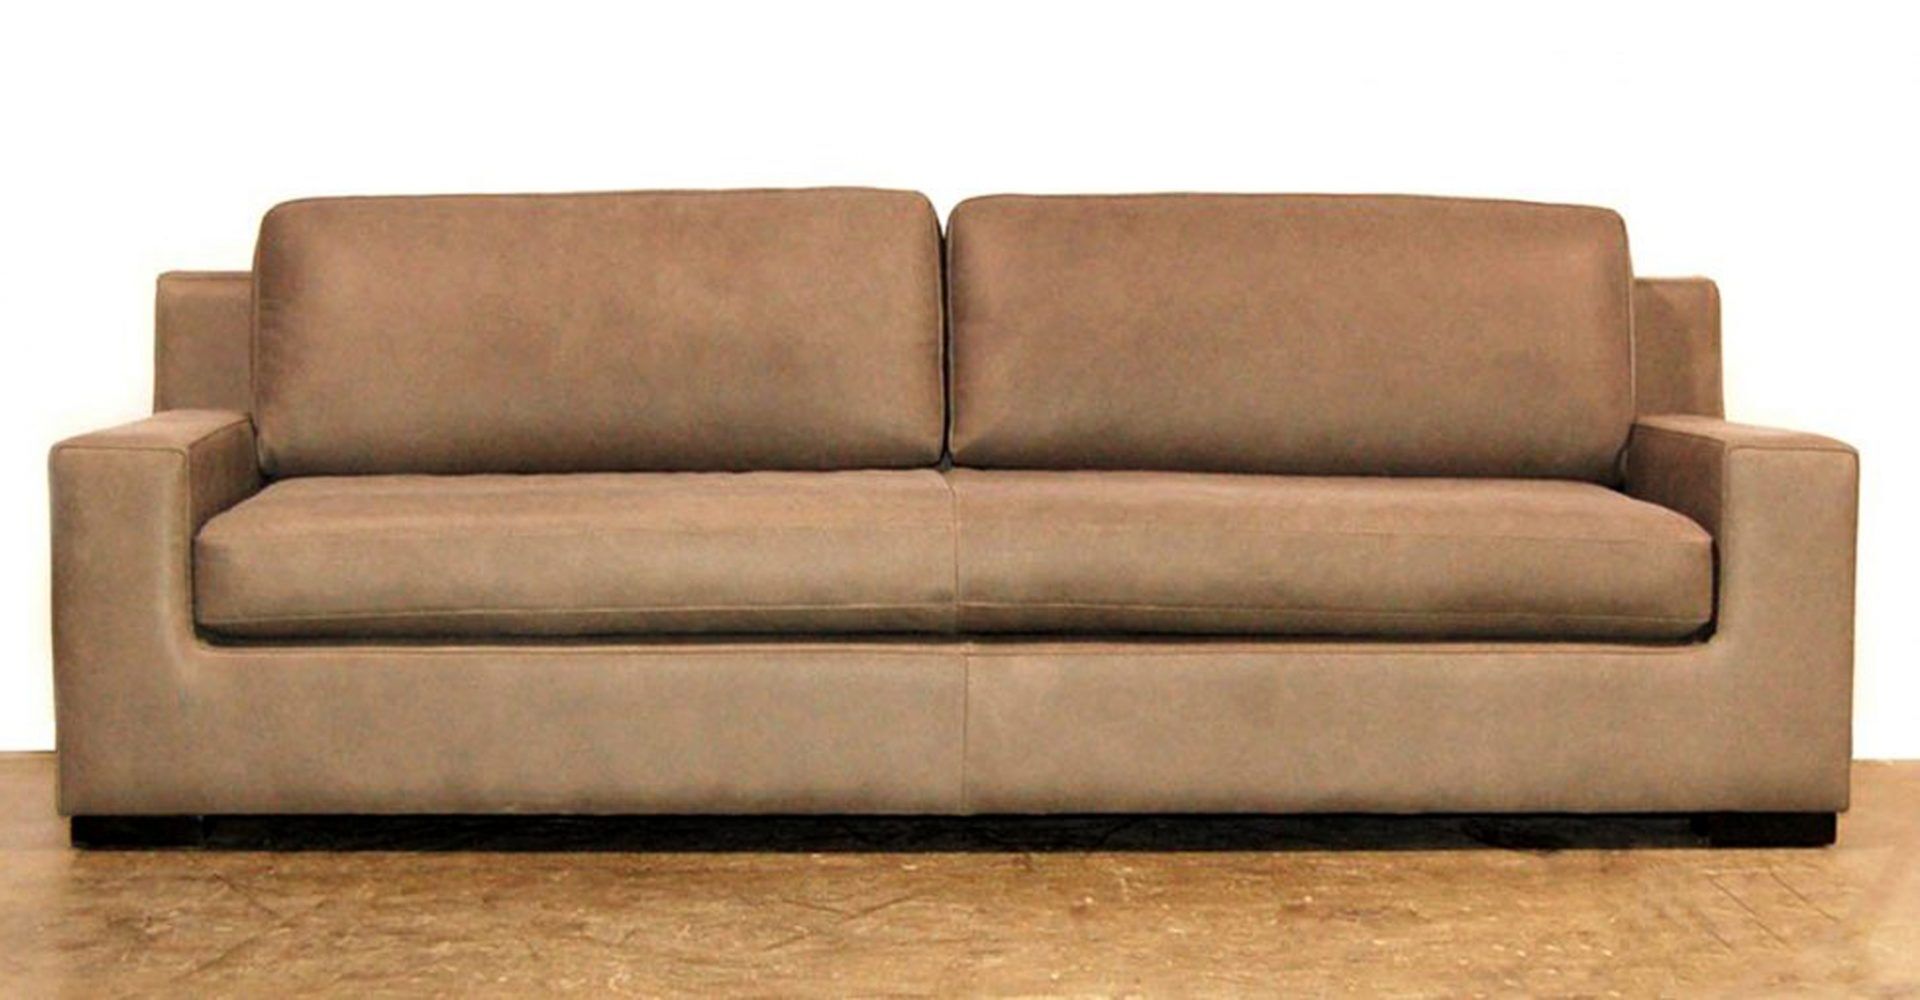 axel leather sofa 89 ottoman set